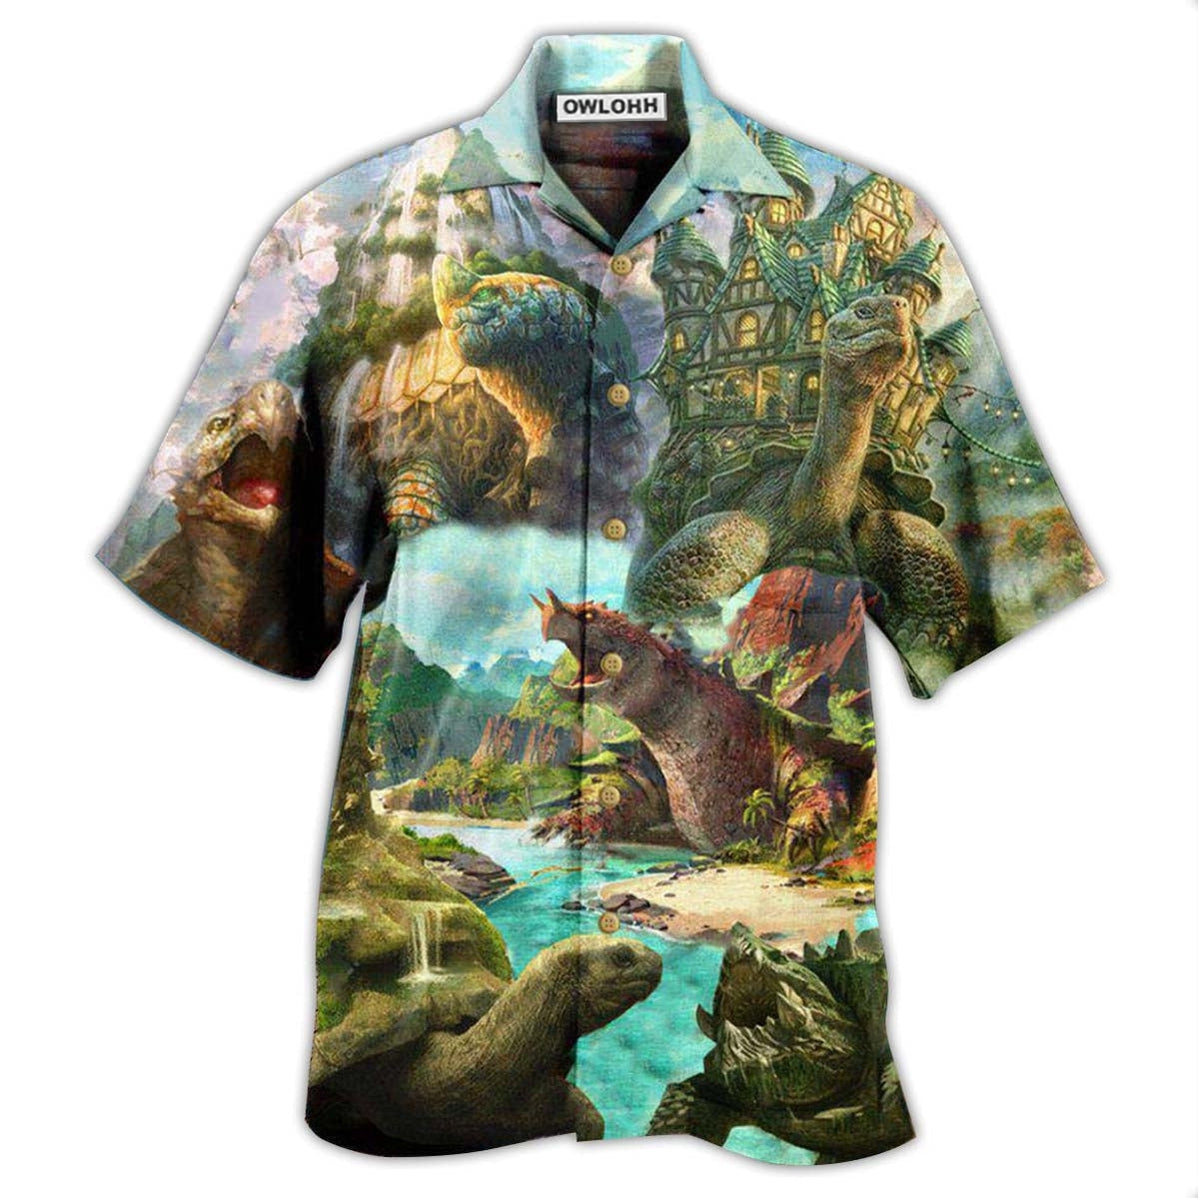 Hawaiian Shirt / Adults / S Turtle Giant Dreams - Hawaiian Shirt - Owls Matrix LTD